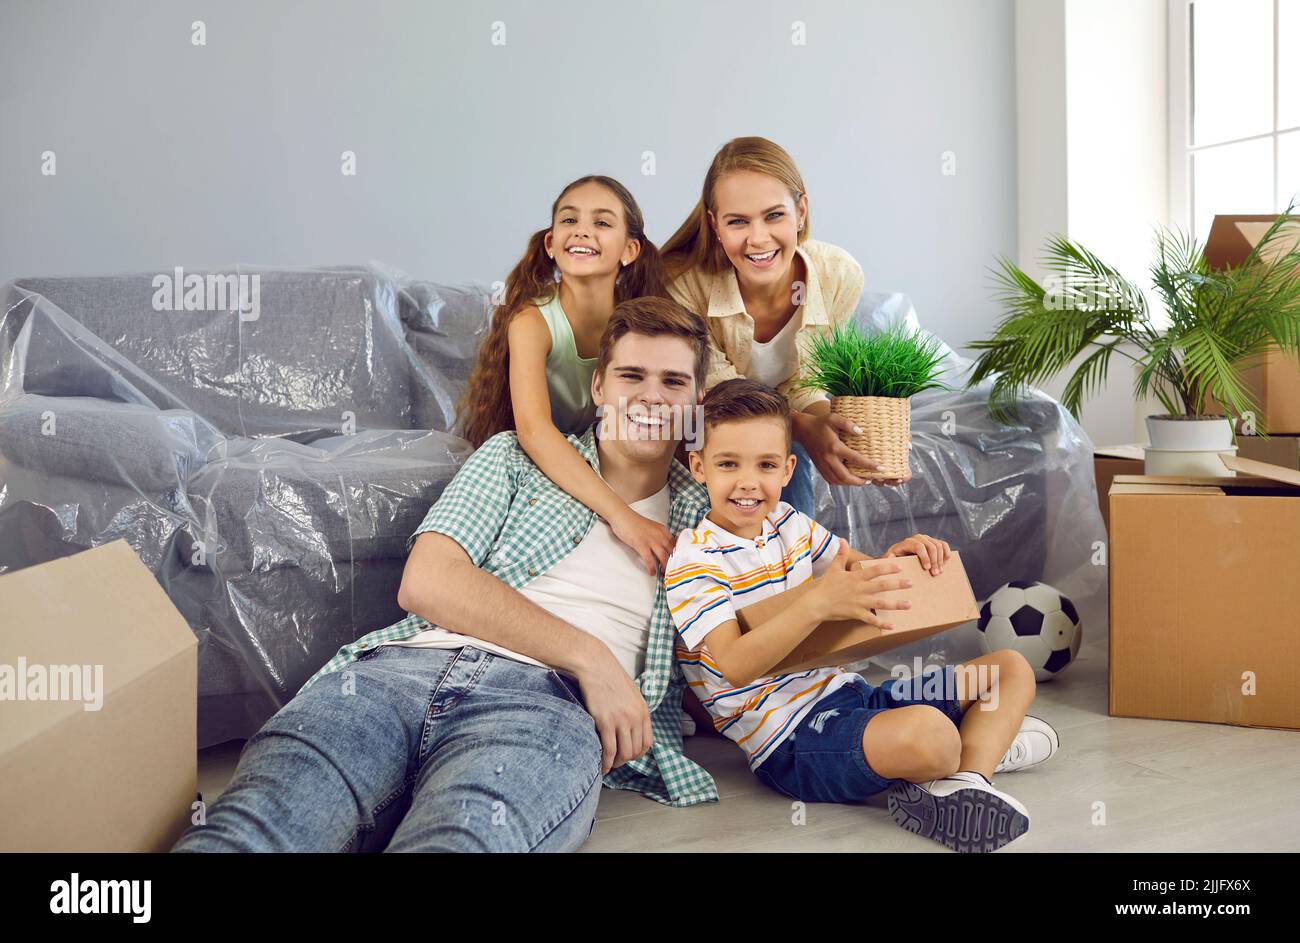 Porträt einer glücklichen Familie mit Kindern im Wohnzimmer ihres neuen Zuhauses am Umzugstag Stockfoto